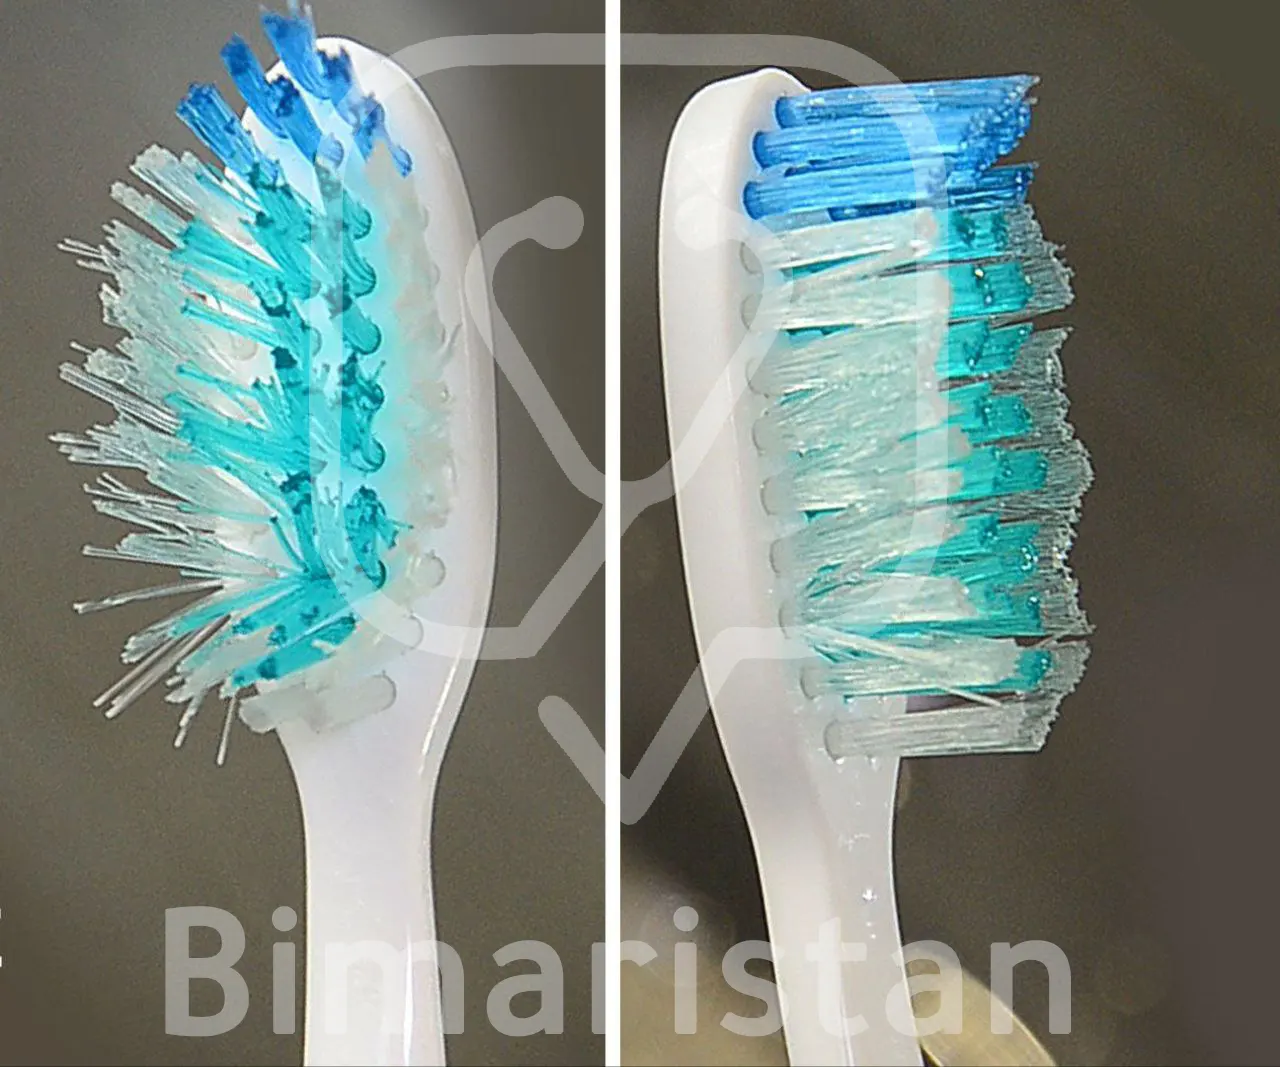 Soldaki fotoğraf, diş fırçası kıllarında belirgin bir hasar olduğunu ve bu nedenle değiştirilmesi gerektiğini gösteriyor